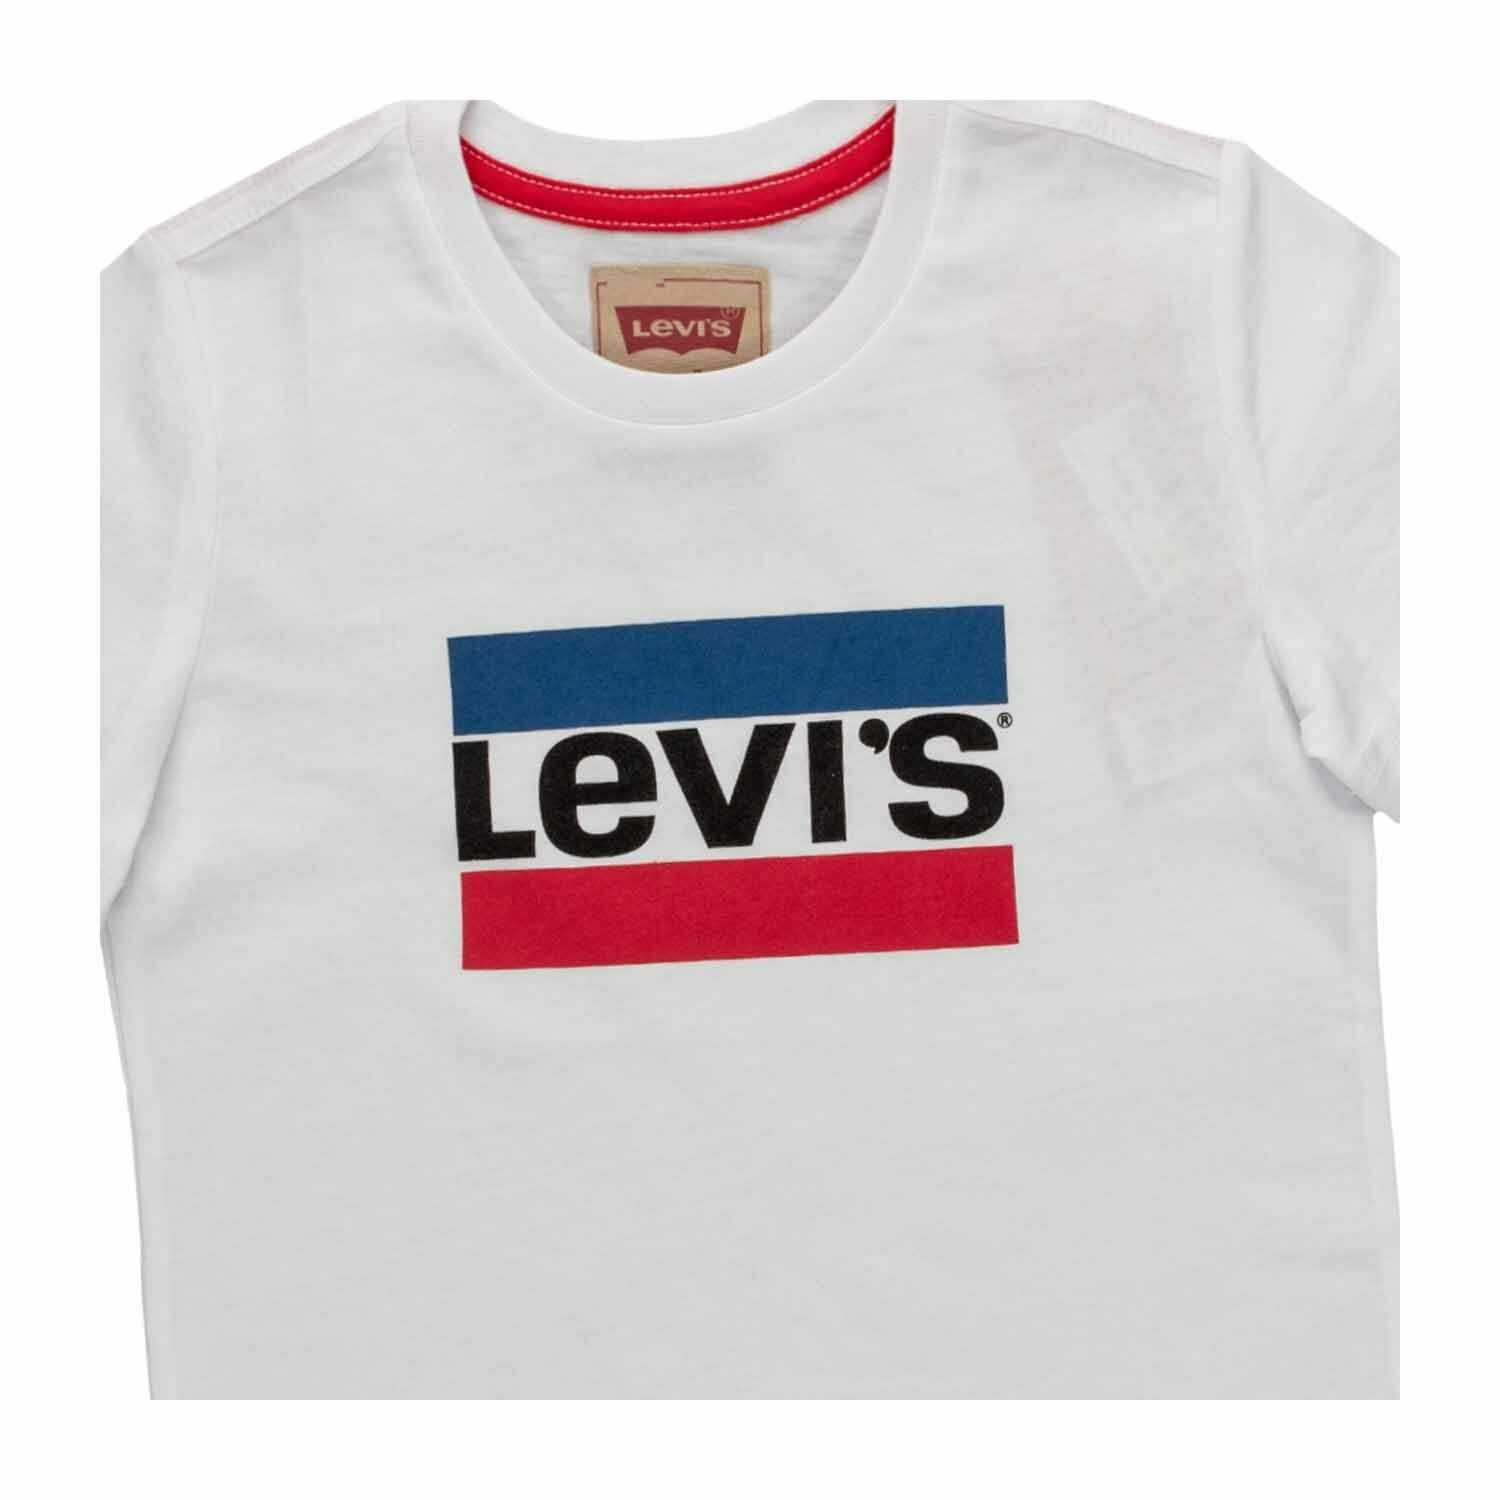 Bambini Abbigliamento bambina Top e t-shirt T-shirt Levi's T-shirt Tee shirt levi's 